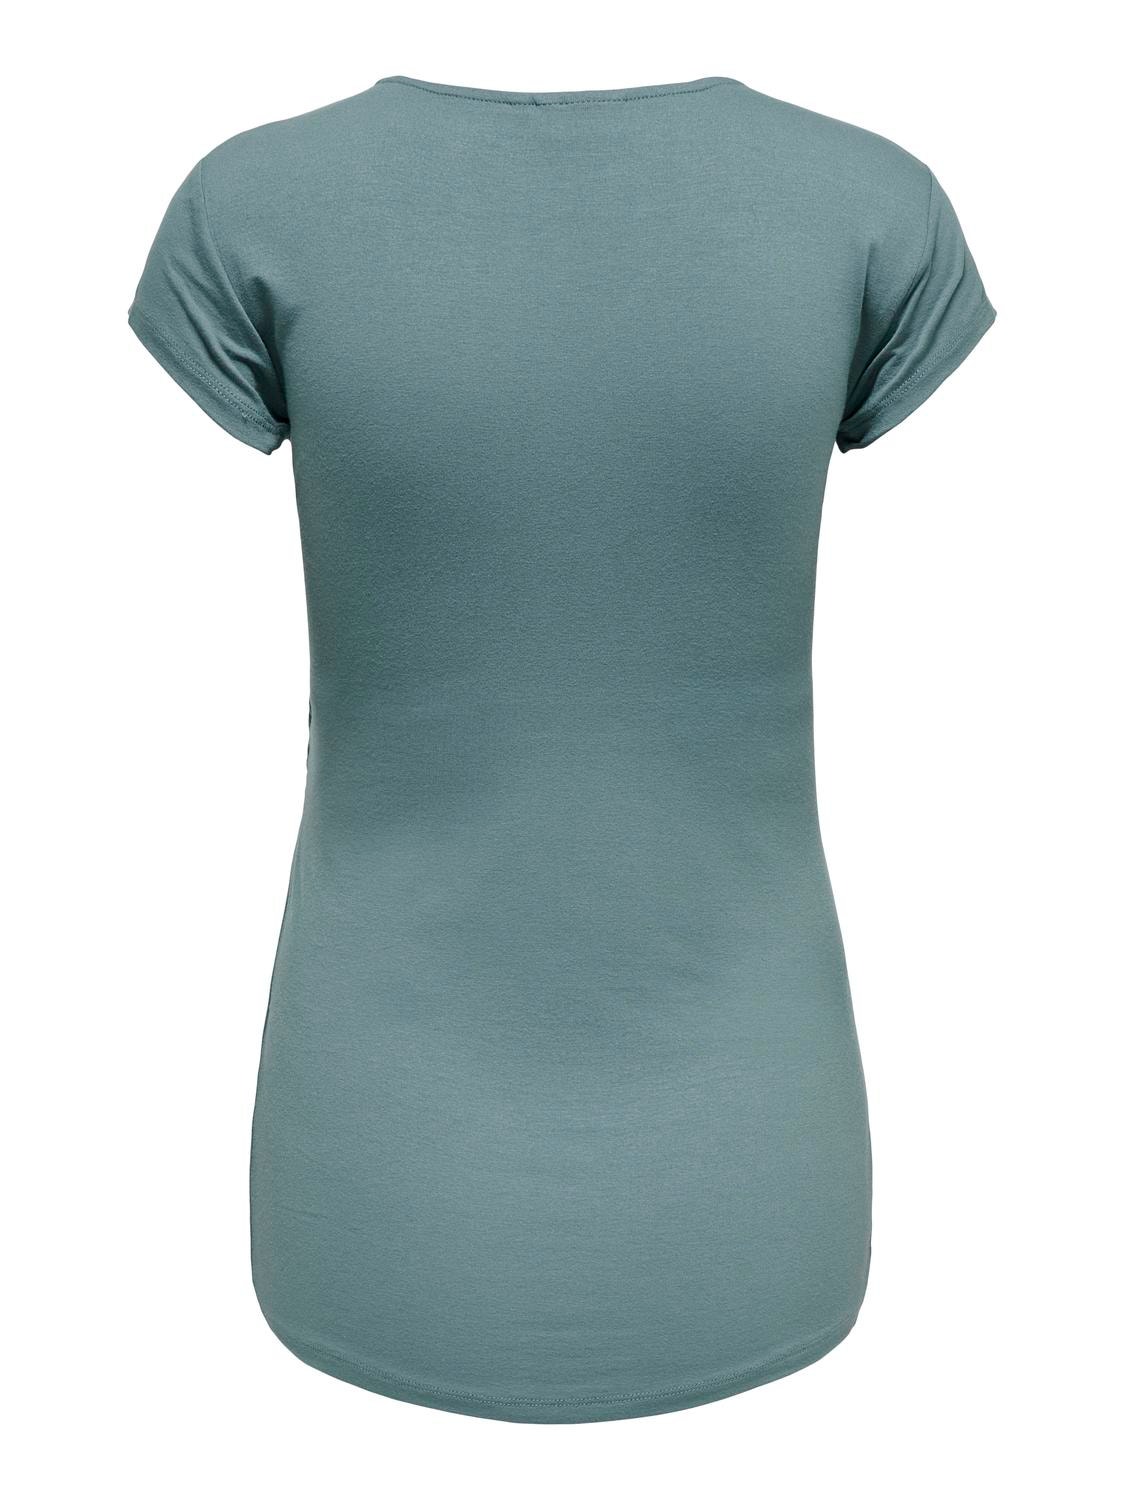 ONLY Standard Fit U-Neck T-Shirt -Balsam Green - 15247229